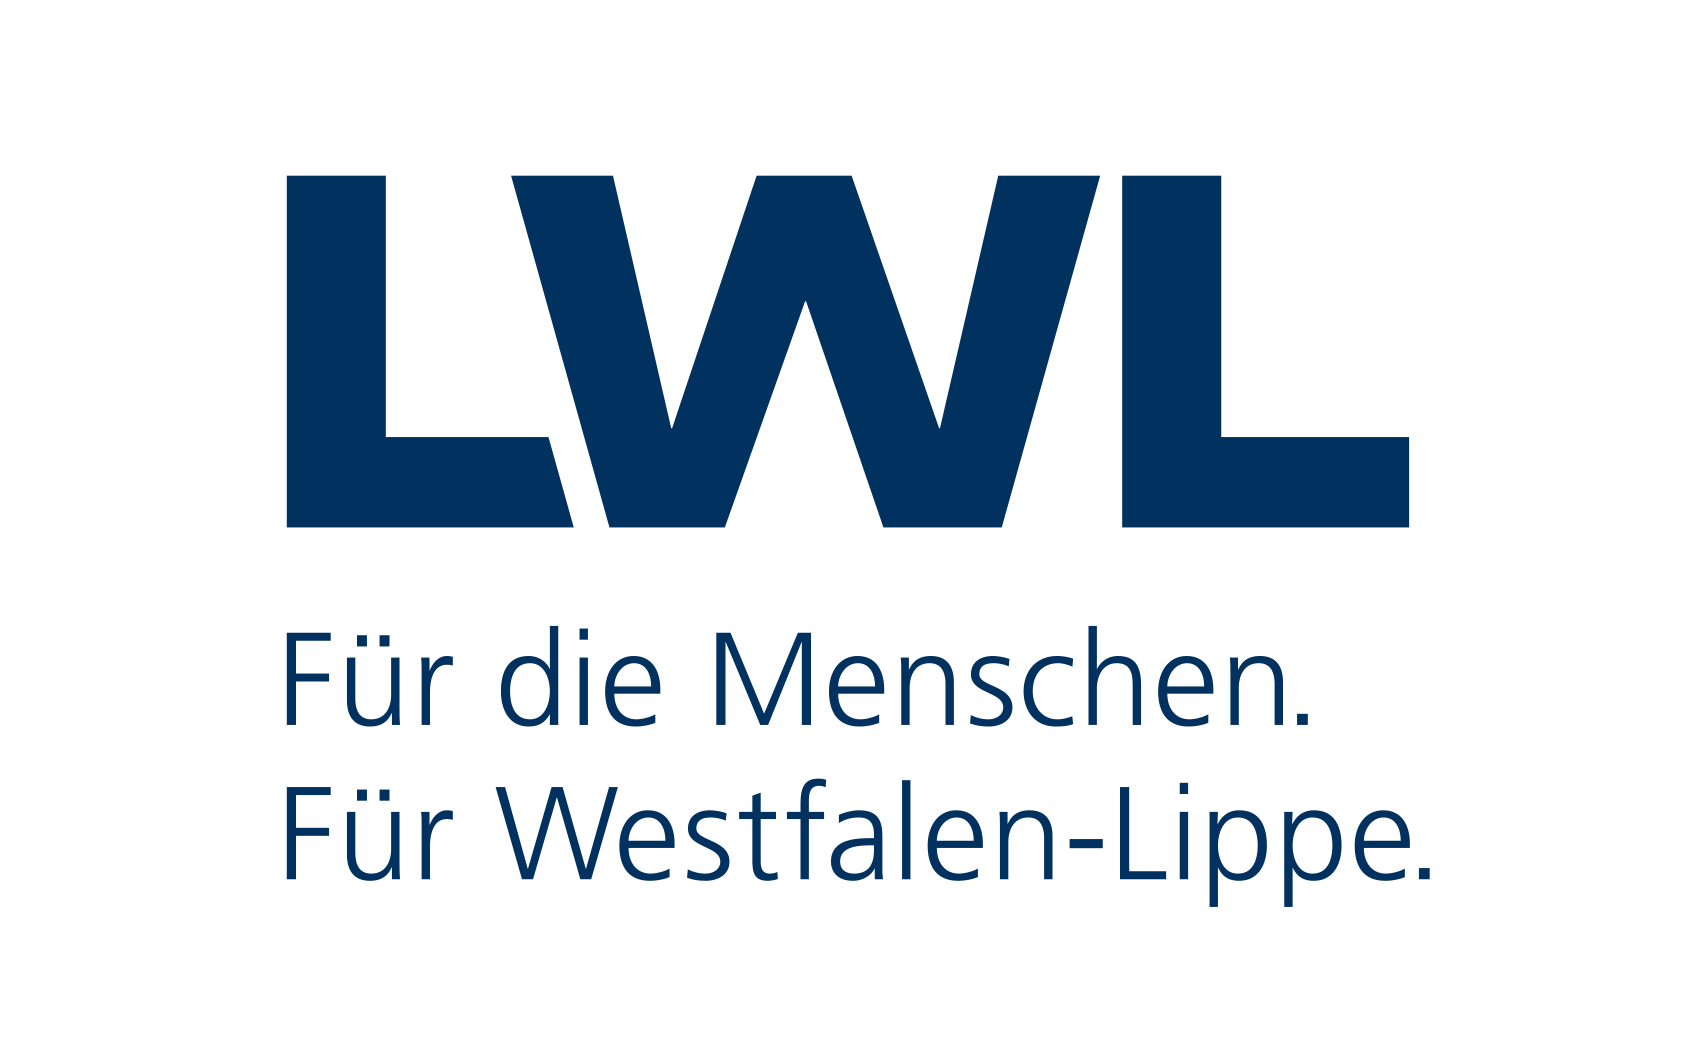 LWL Logo